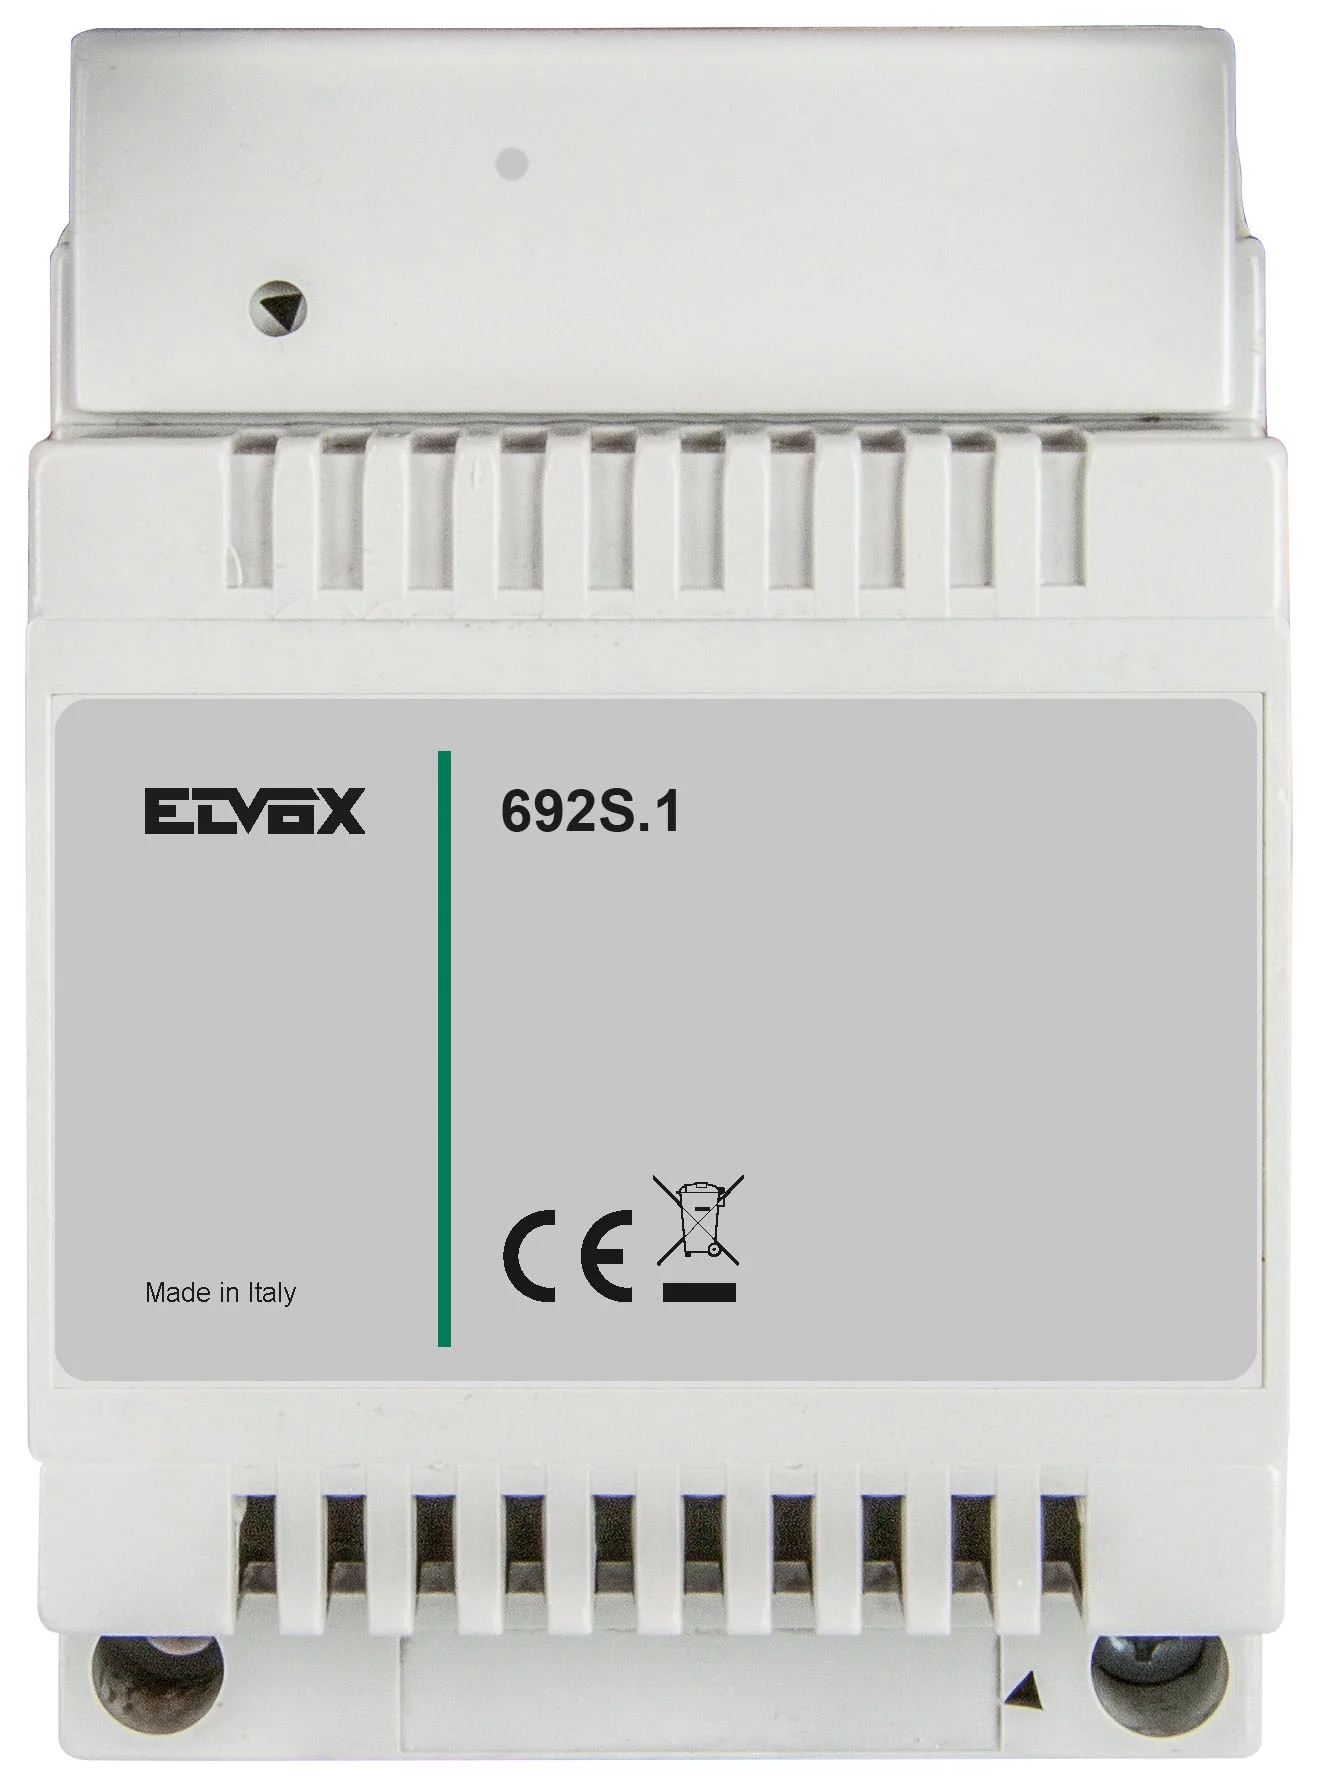 Elvox 692s.1 Power/Bus Separator For Elvox Due Fili Intercom Systems